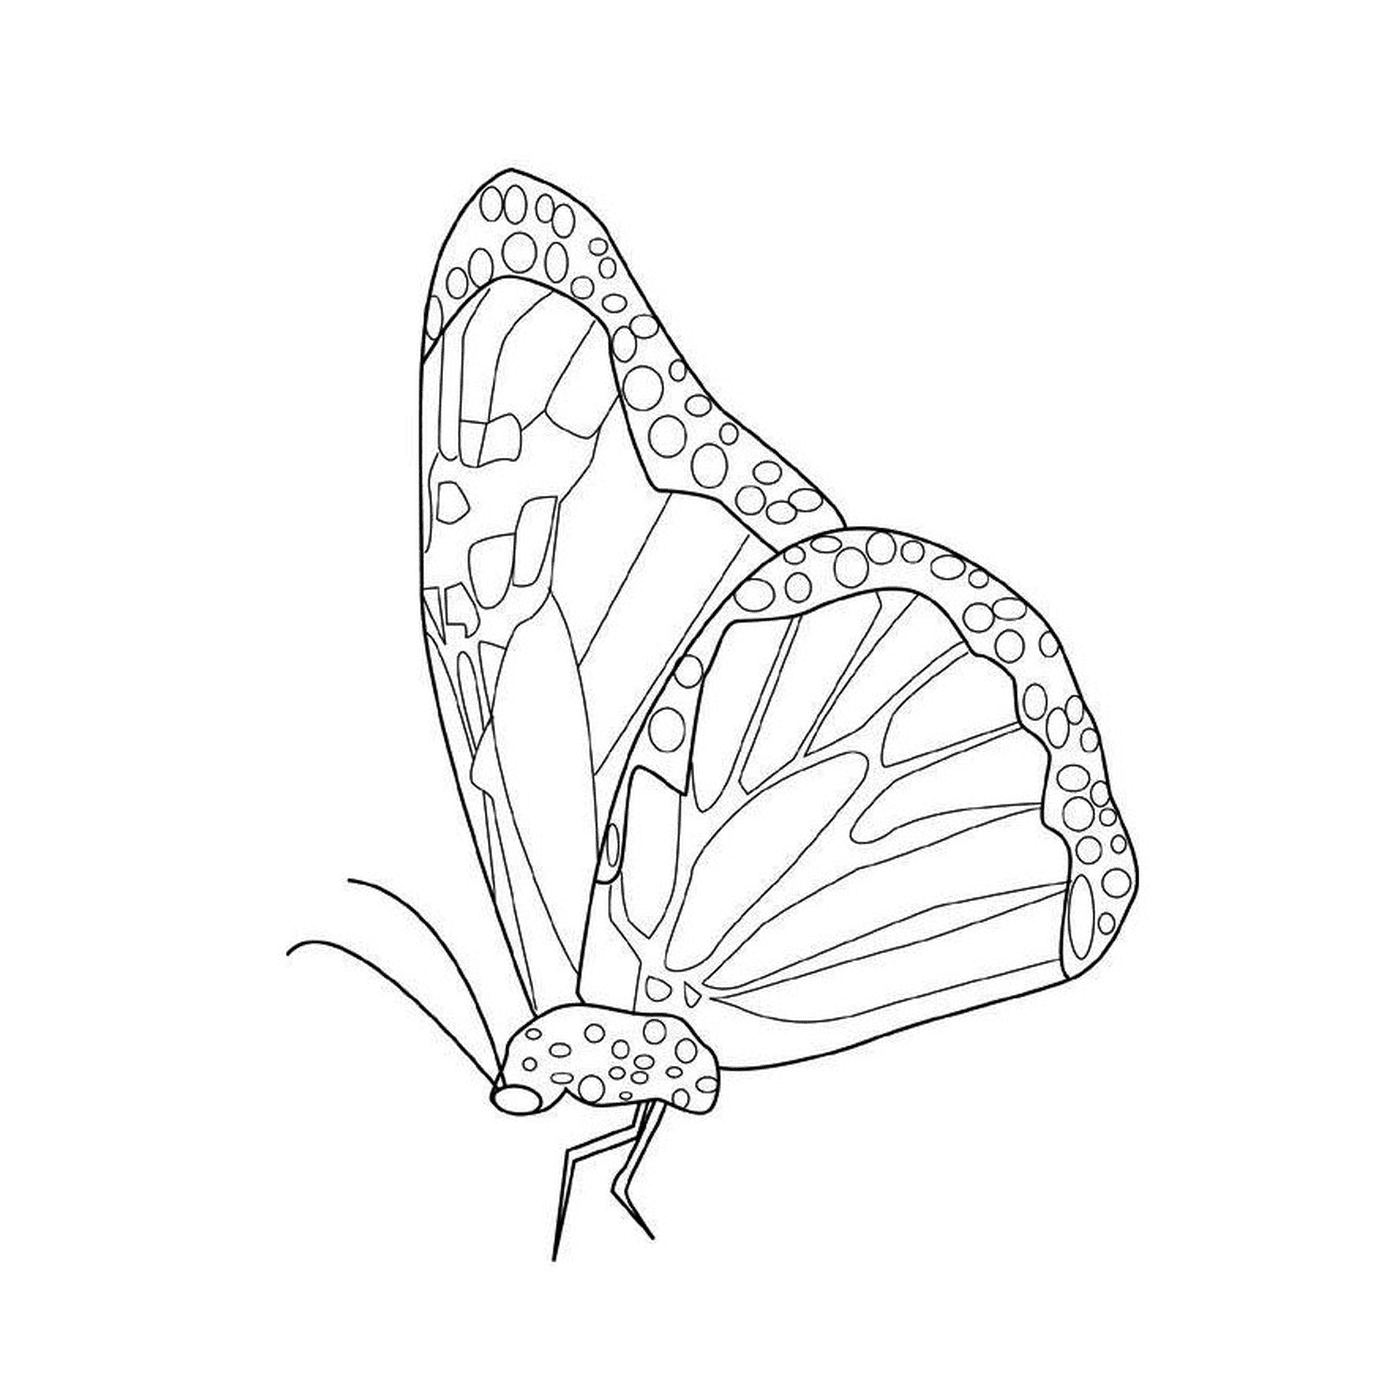  Бабочка монарха с уникальными образцами 